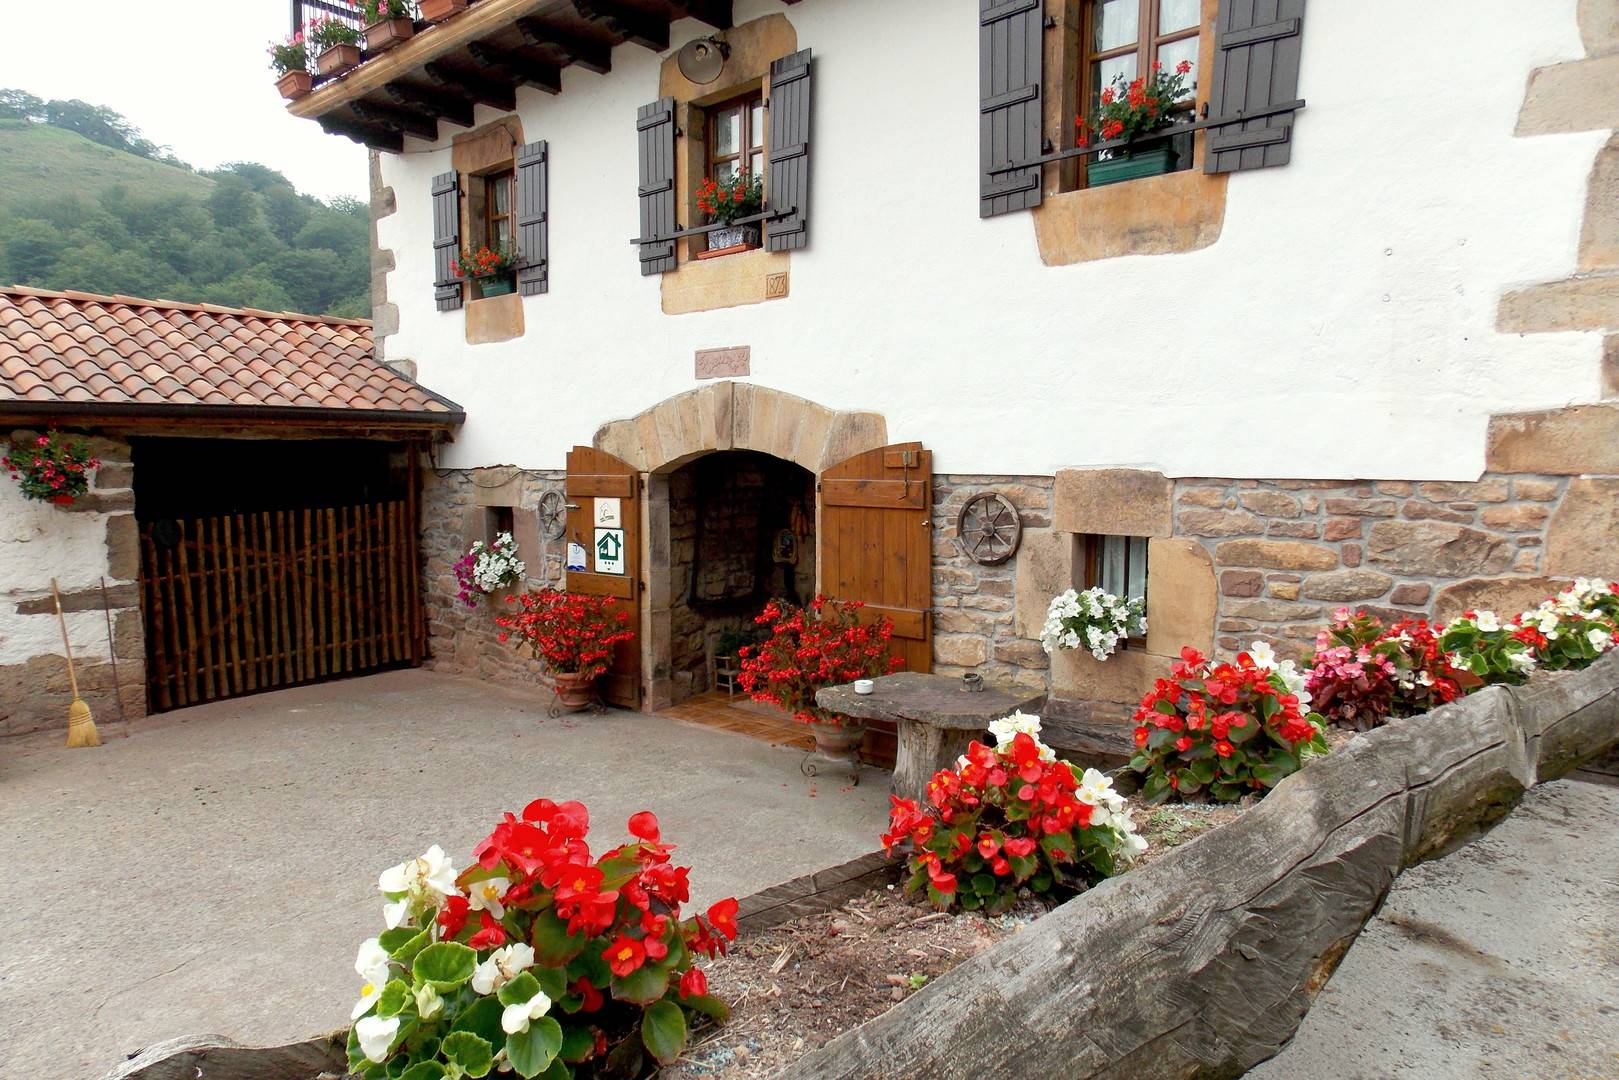 House in Valle de Baztan